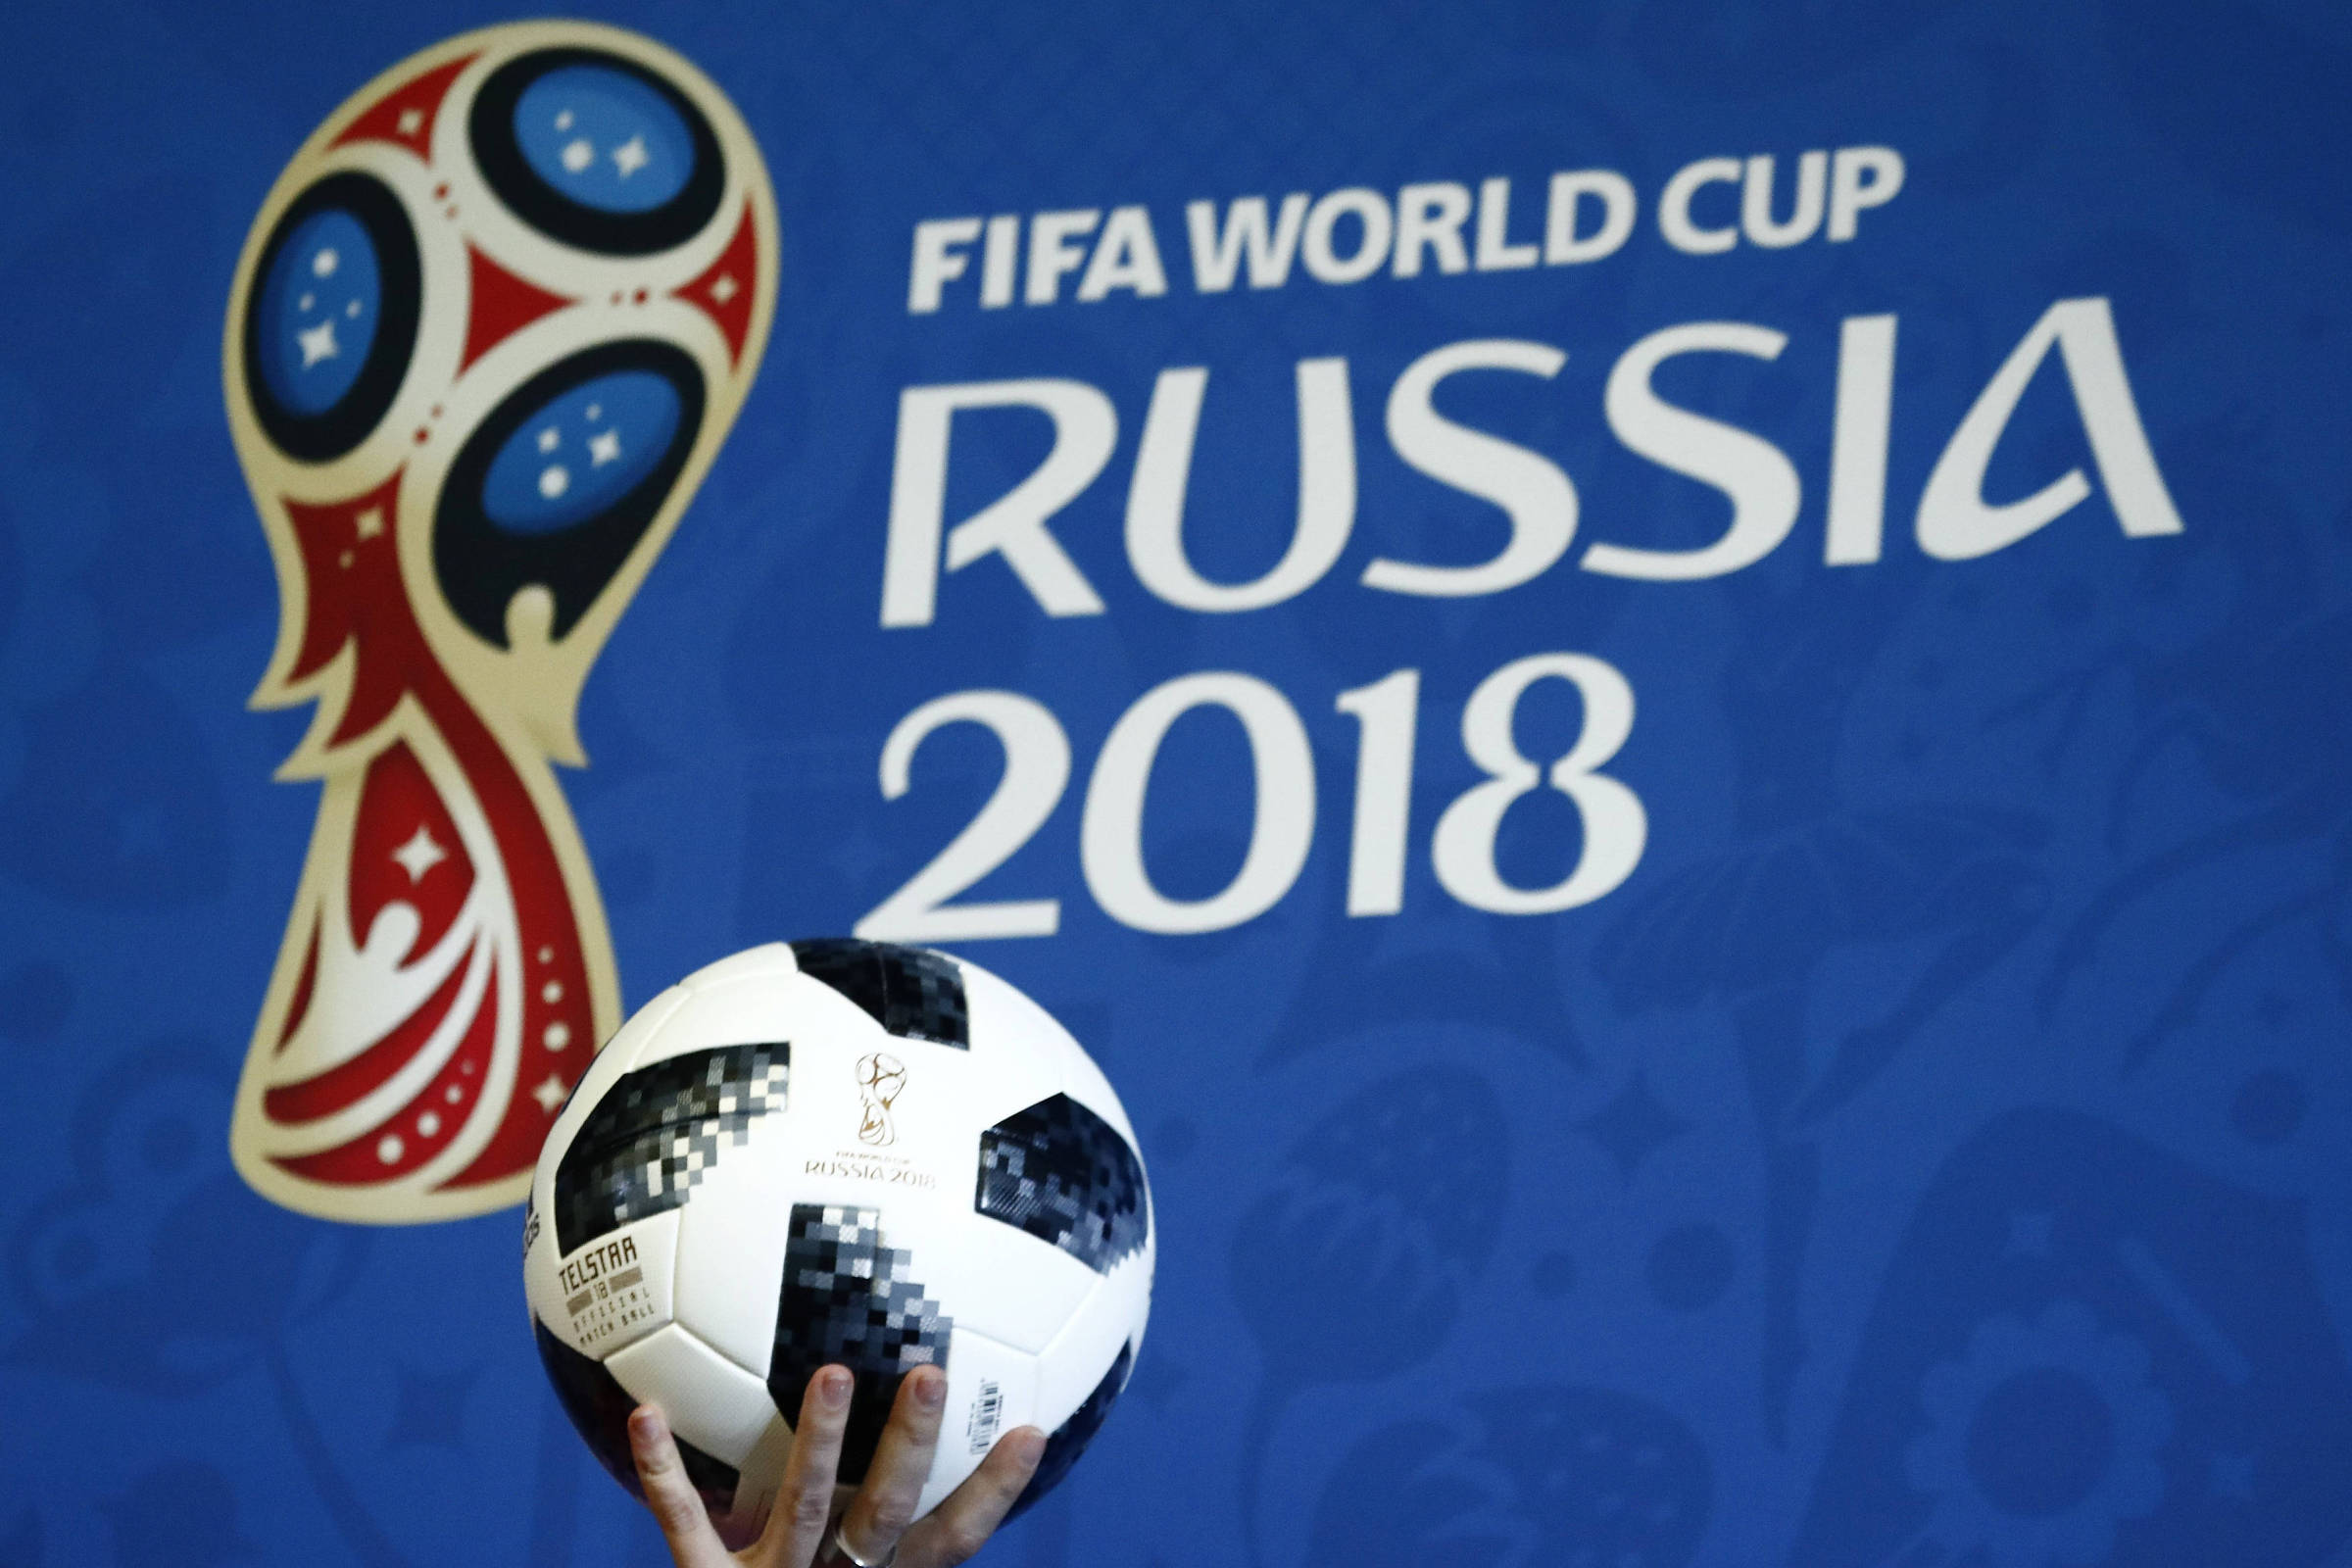 Fifa revela logo da Copa do Mundo de 2018 da Rússia